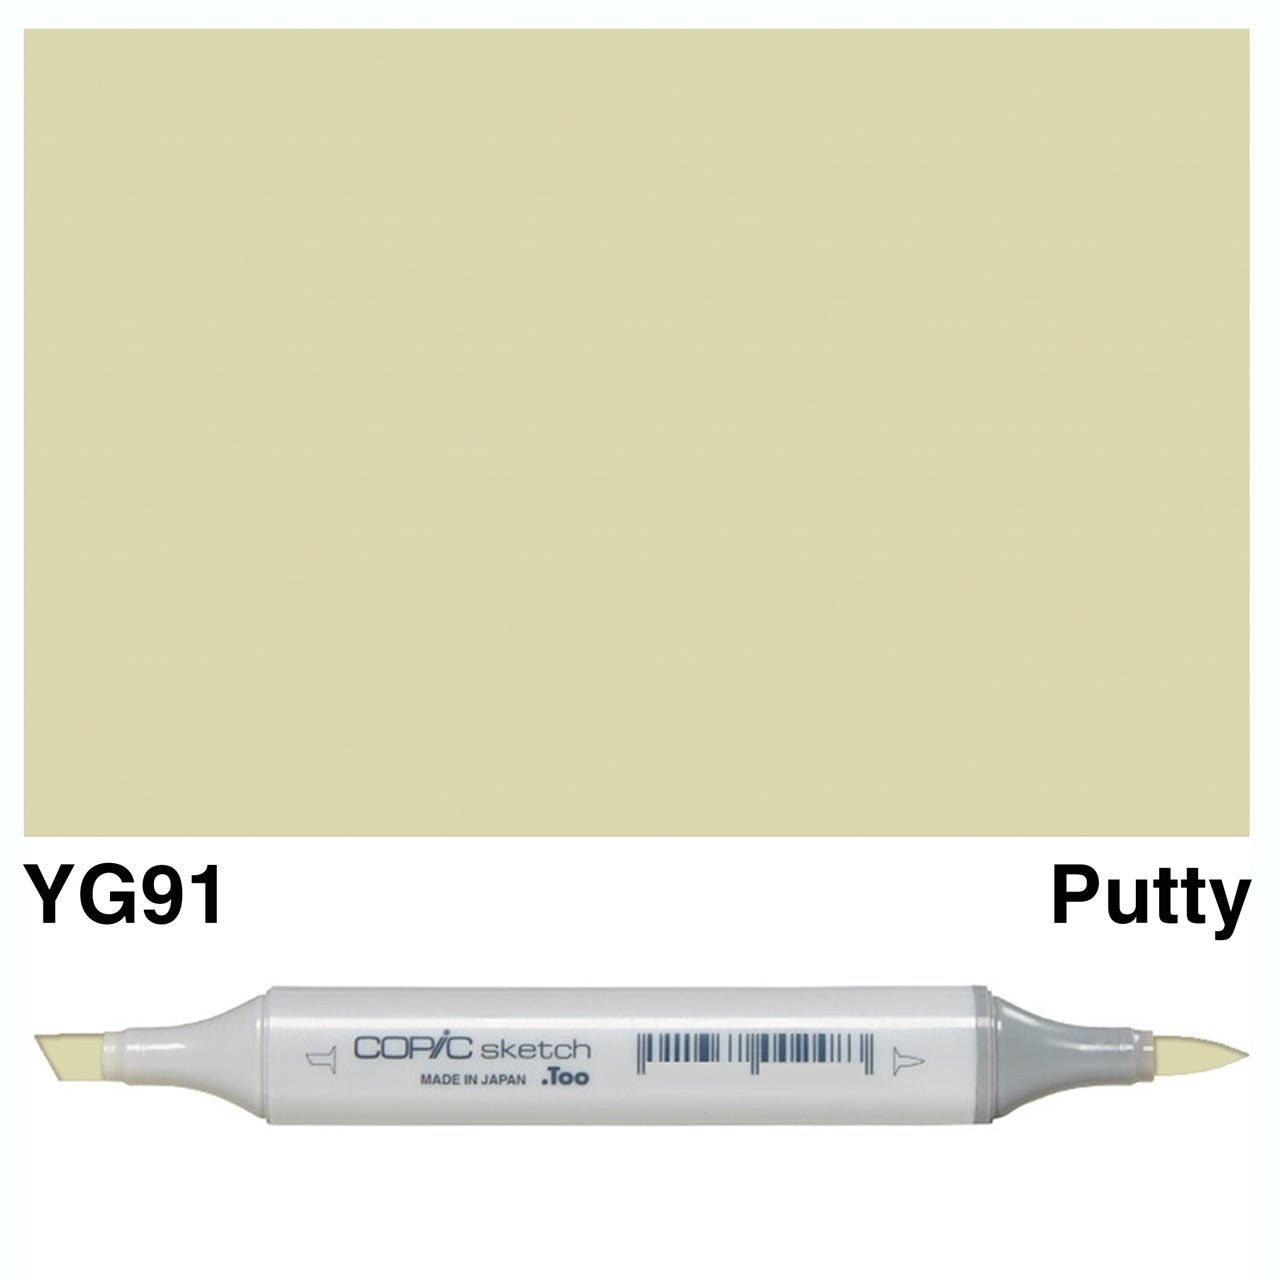 Copic Sketch YG91 Putty - theartshop.com.au